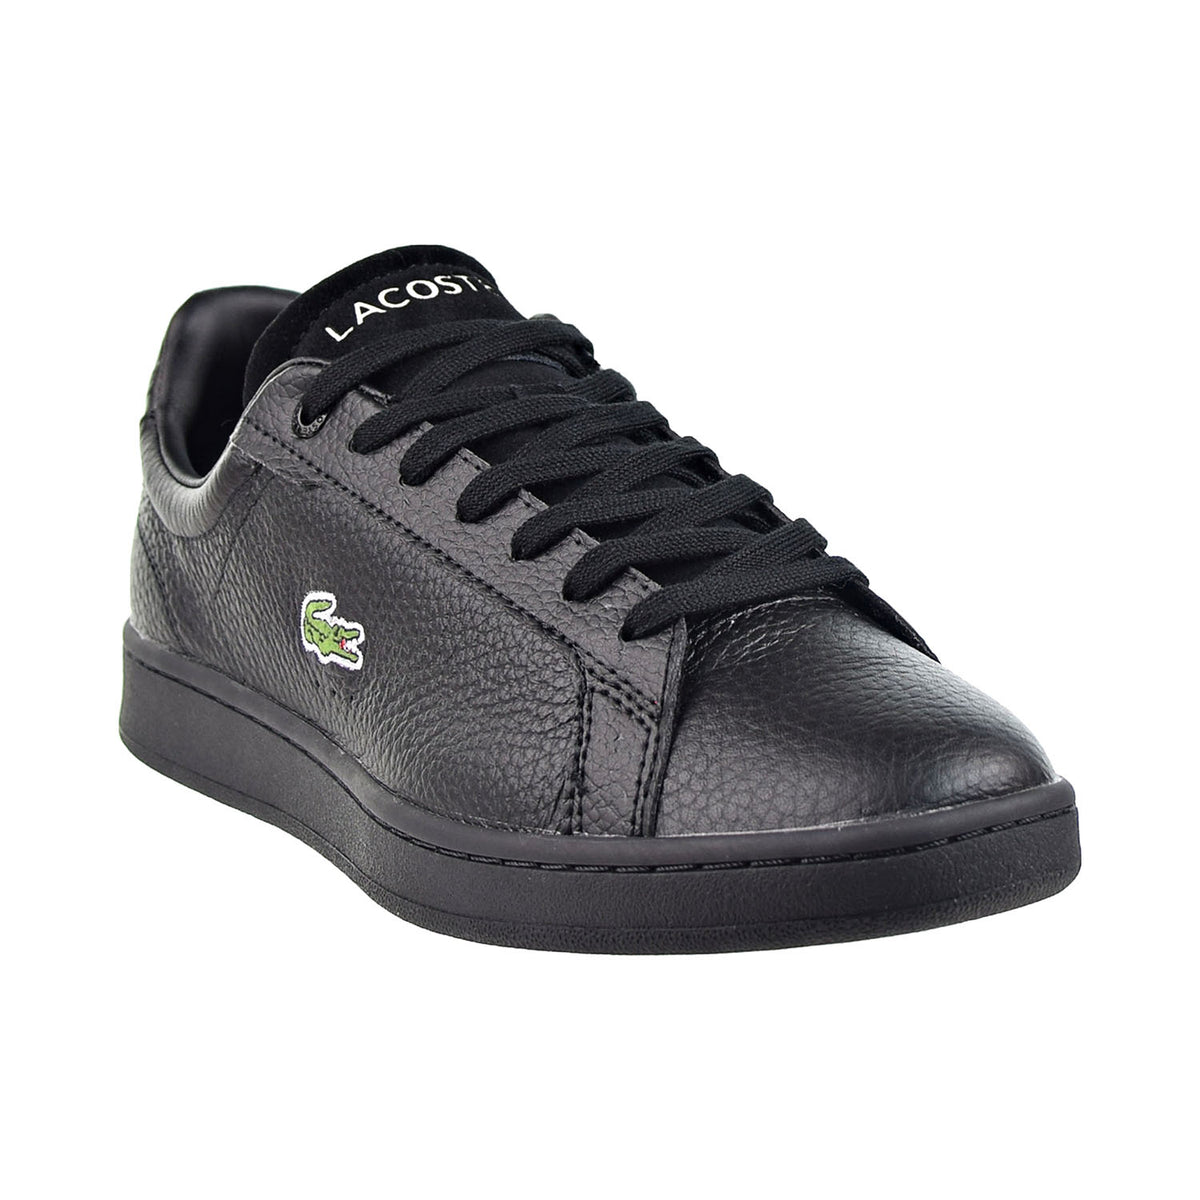 Ren og skær Professor Forbedre Lacoste Carnaby Evo Leather Platinum Men's Shoe Black